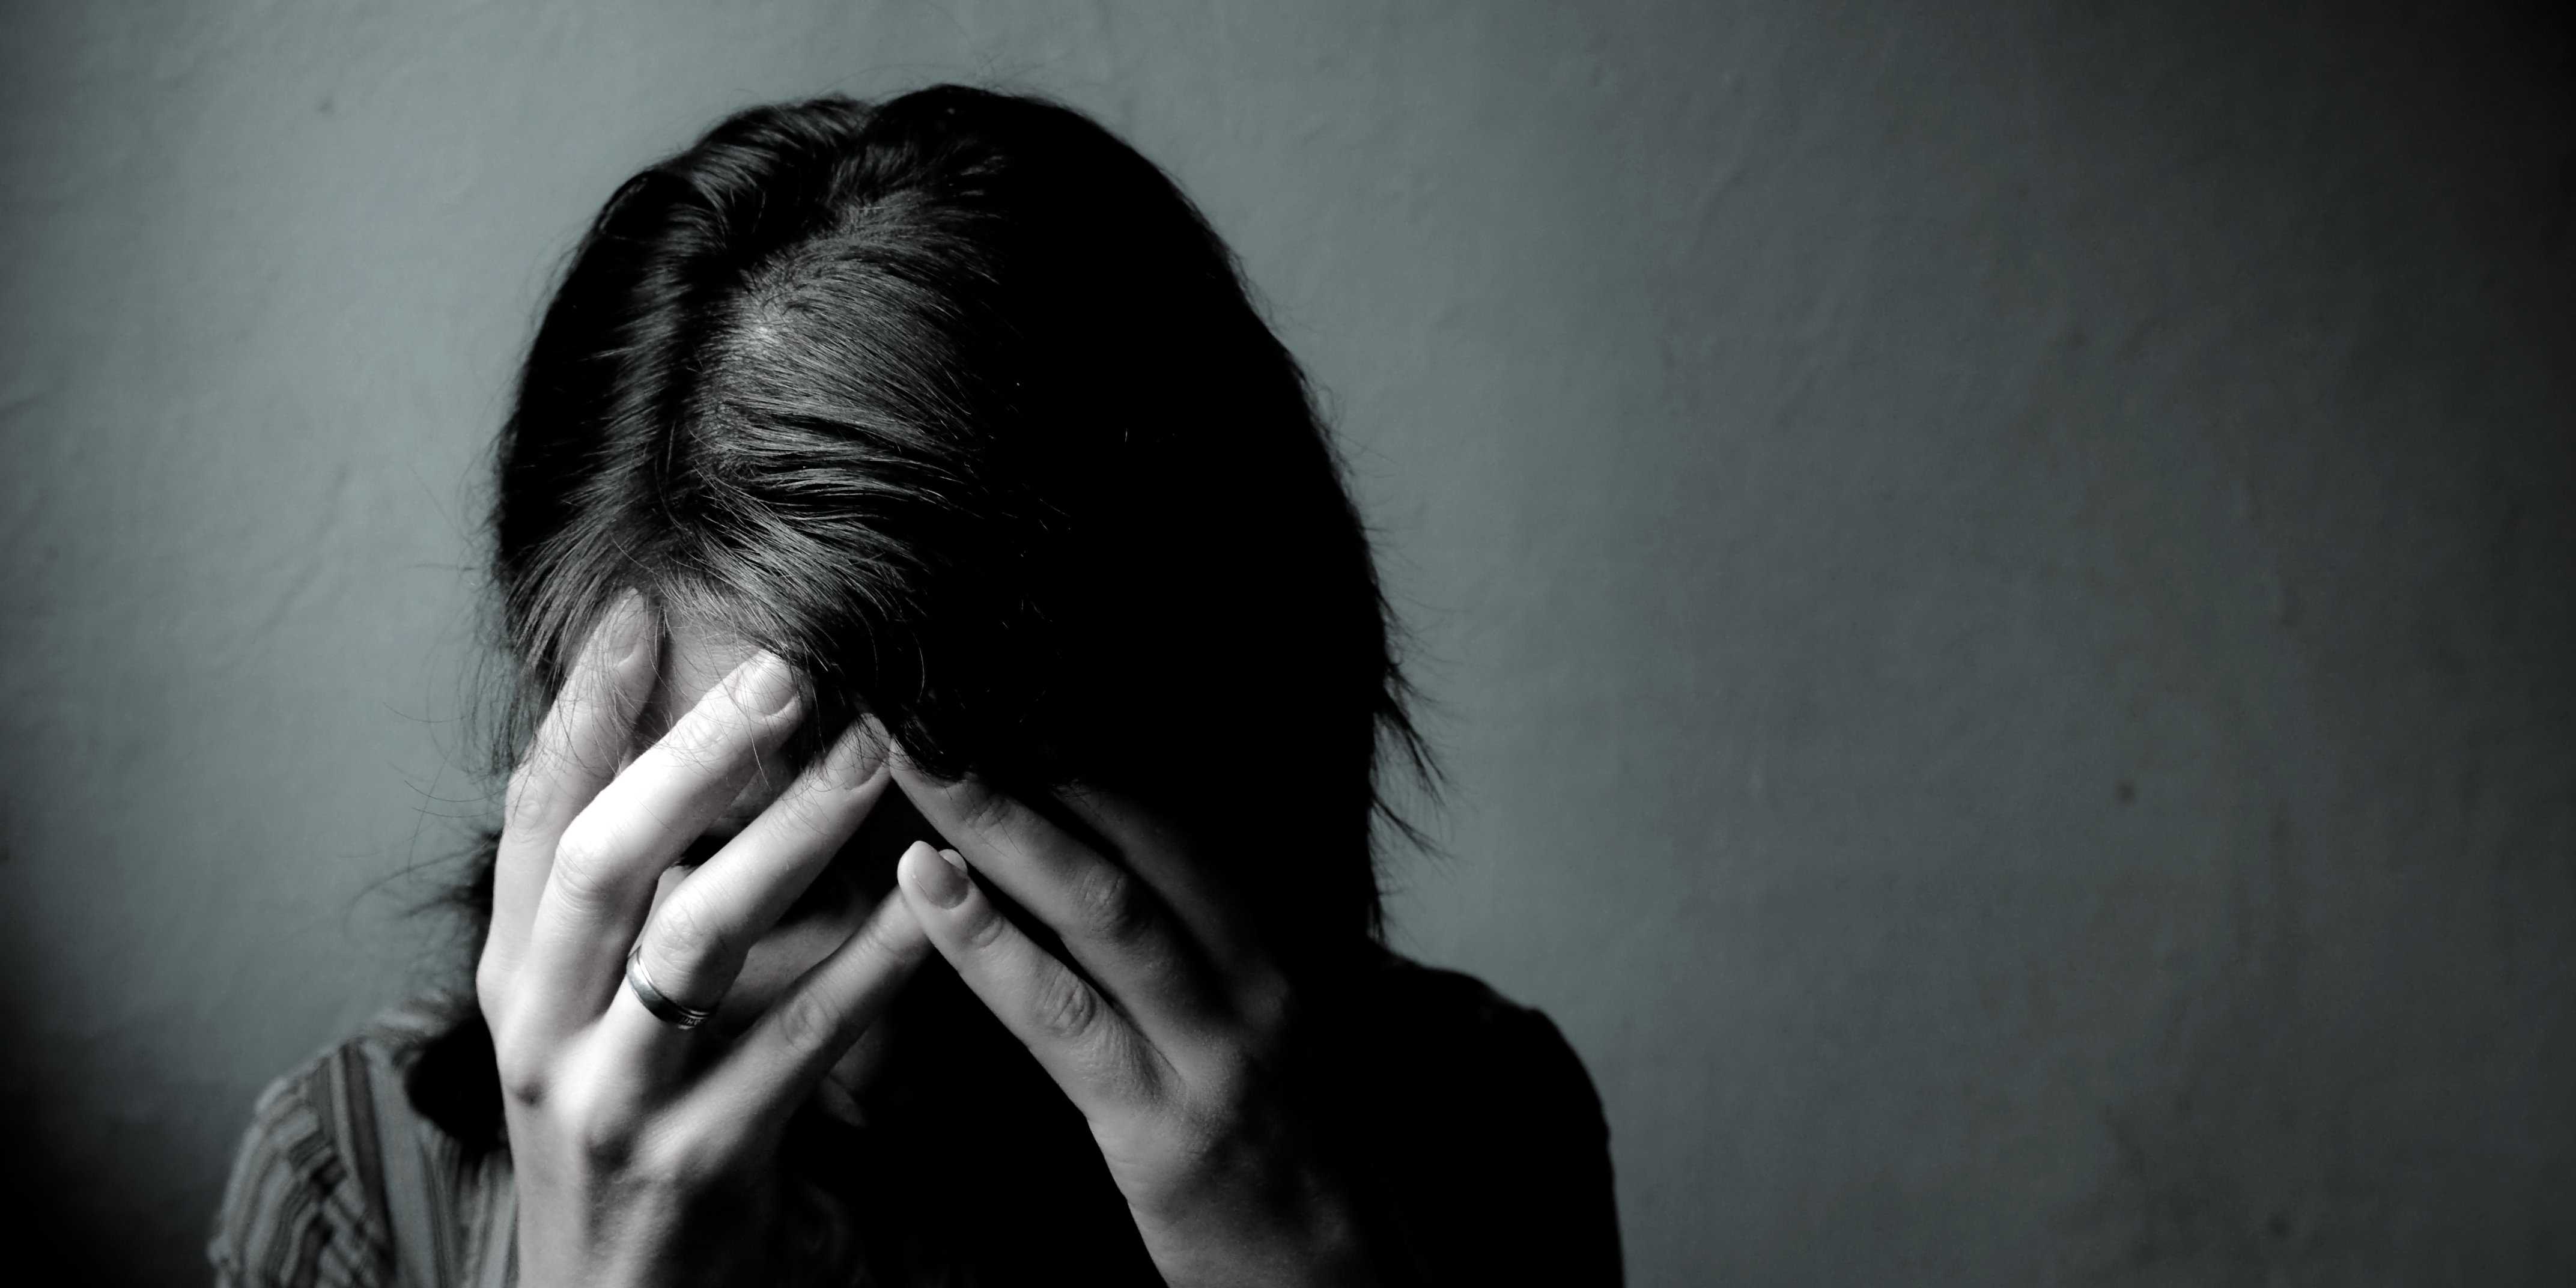 اعراض الاكتئاب التي تدفعك إلى زيارة الطبيب النفسي في الحال الجزء الثاني